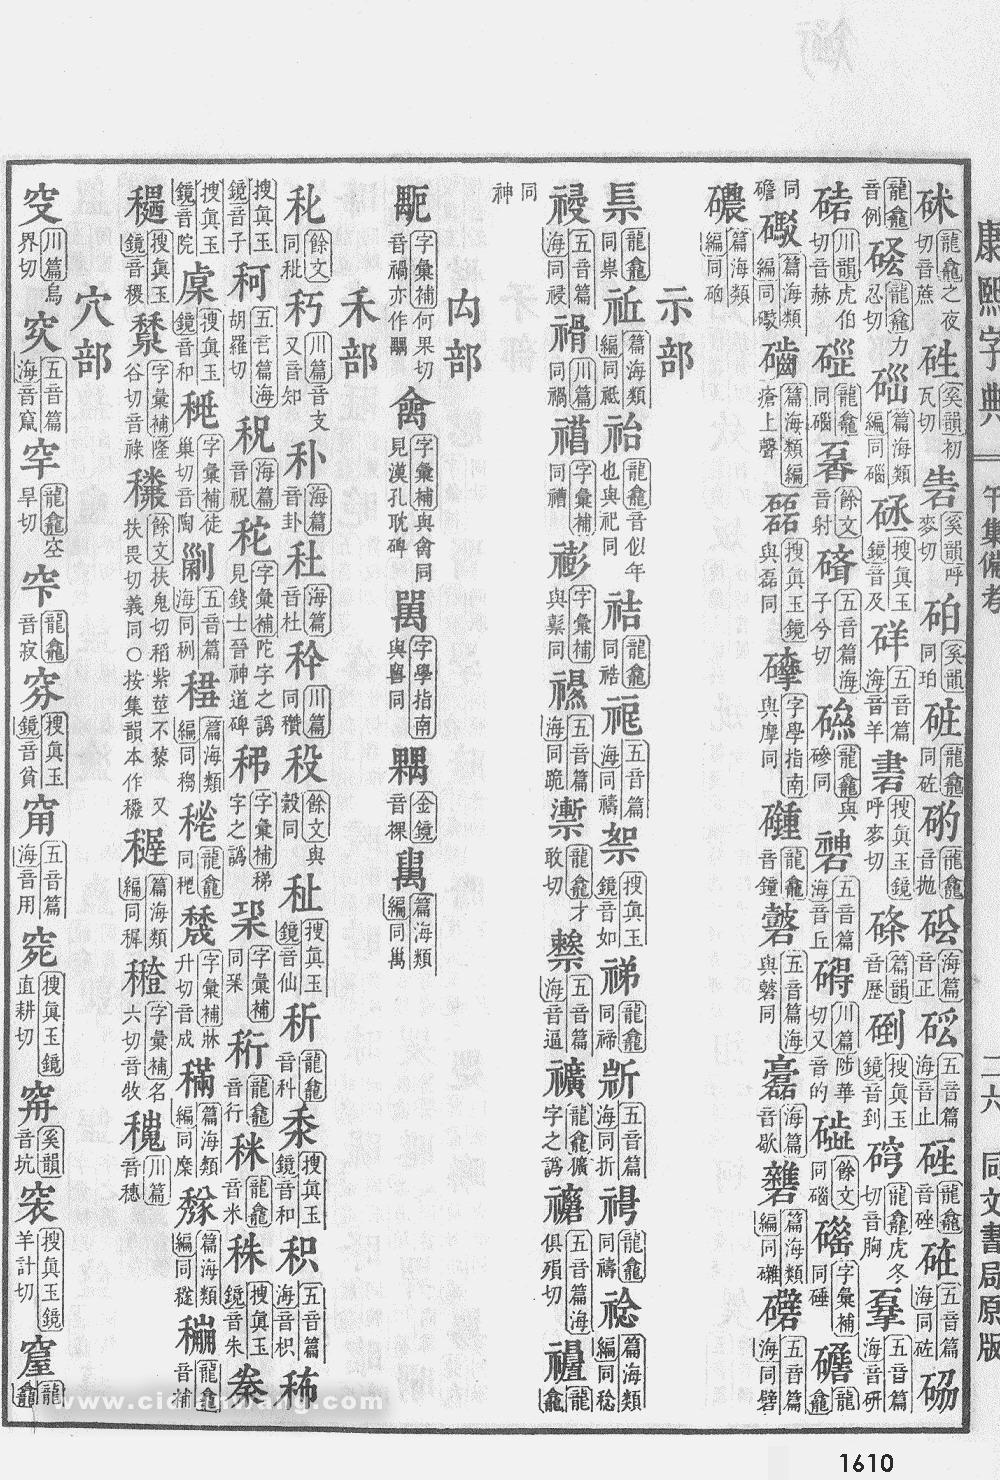 康熙字典掃描版第1610頁